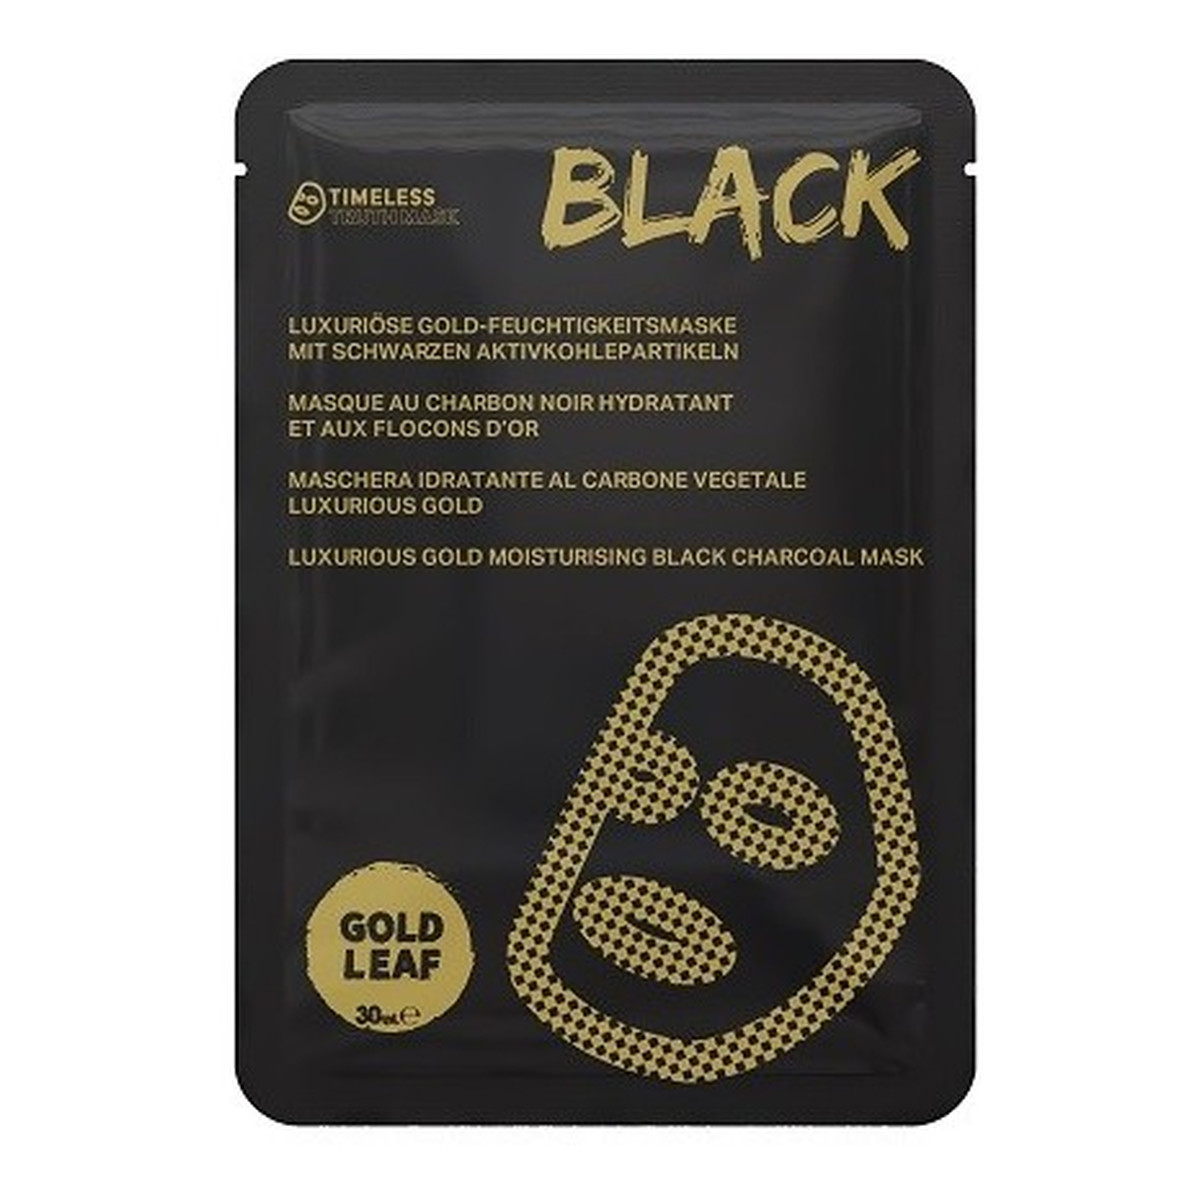 Timeless Truth Mask Luxurious Gold Black Charcoal Gold Leaf nawilżająca maska w płachcie z węglem drzewnym 30ml